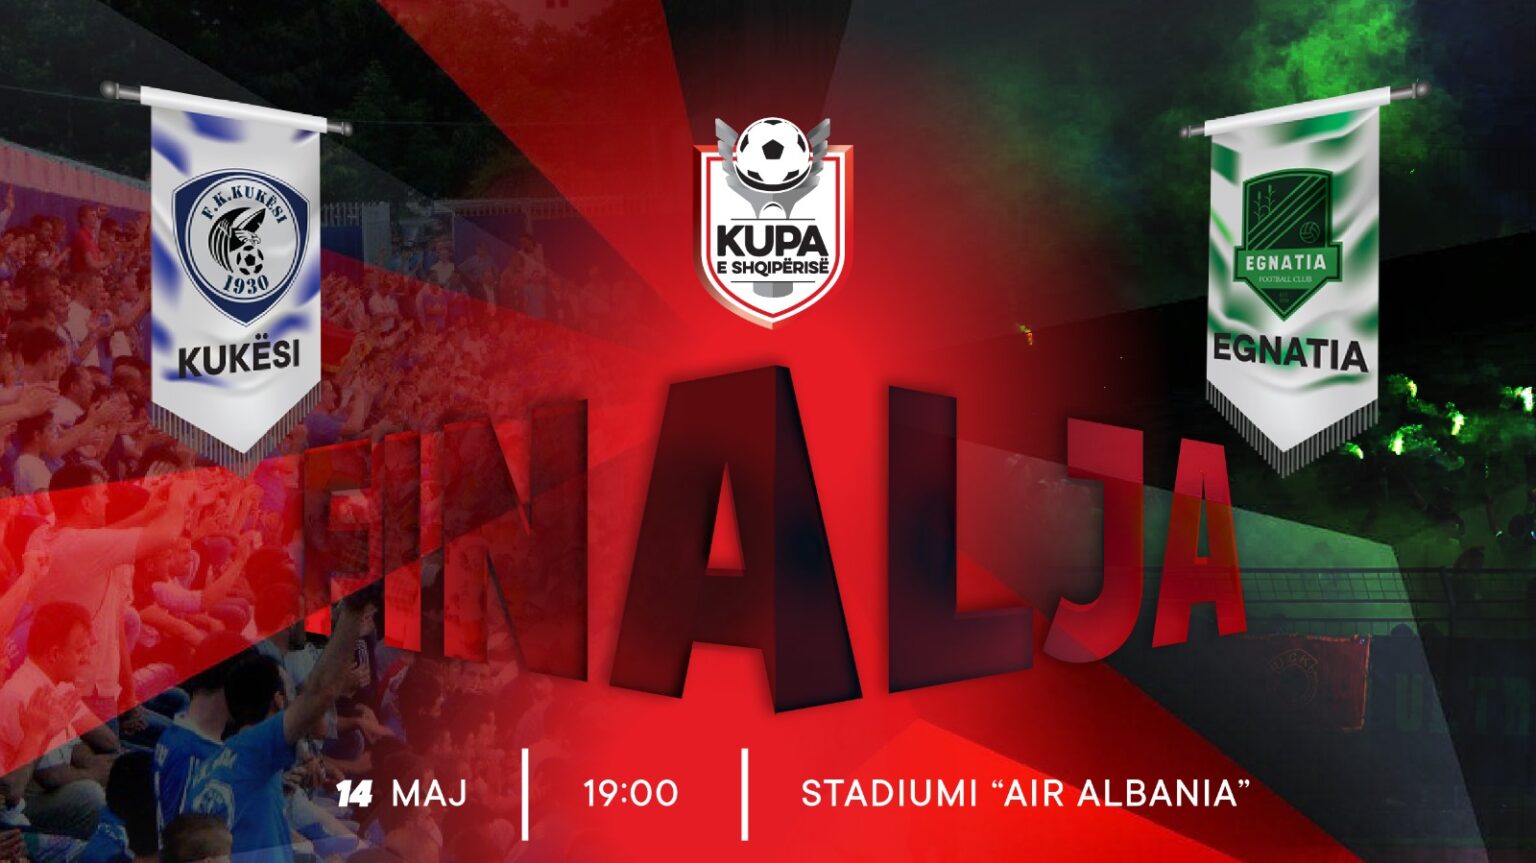 Edhe dy ditë nga finalja, Kukësi & Egnatia luftojnë për trofeun e 72-të në histori të Kupës së Shqipërisë